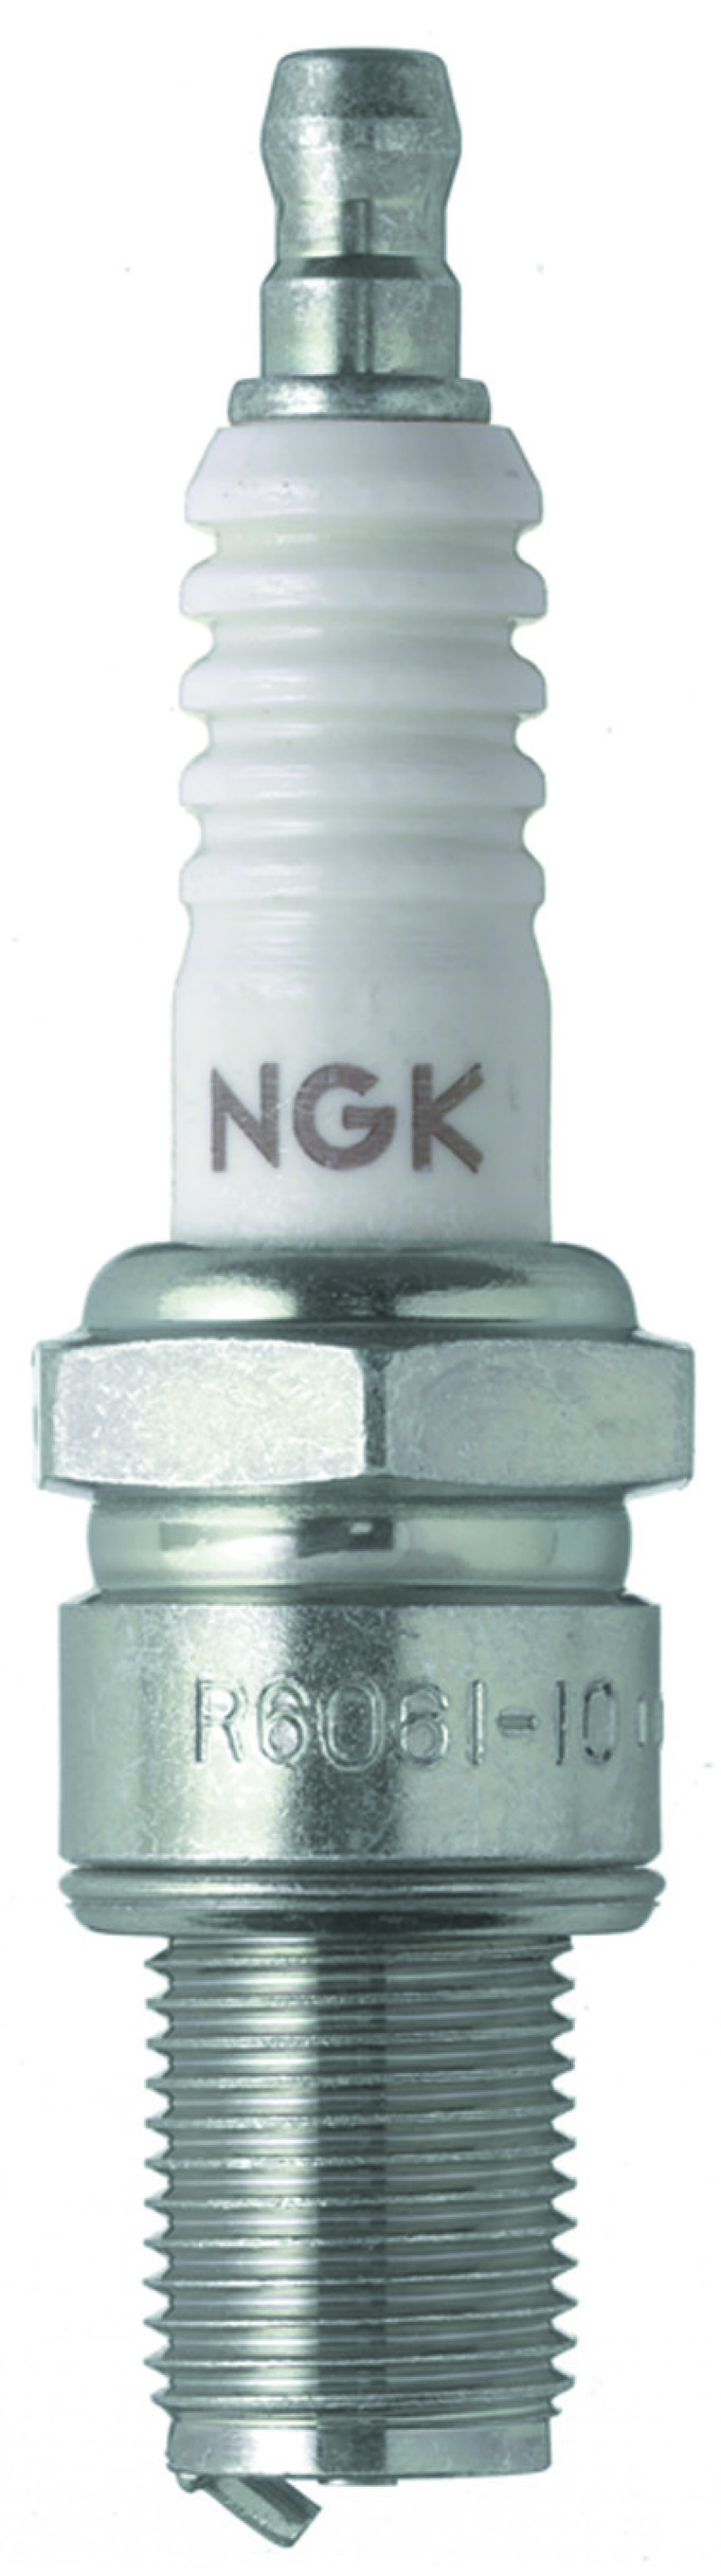 NGK Racing Spark Plug Box of 10 (R6061-9) - 4074